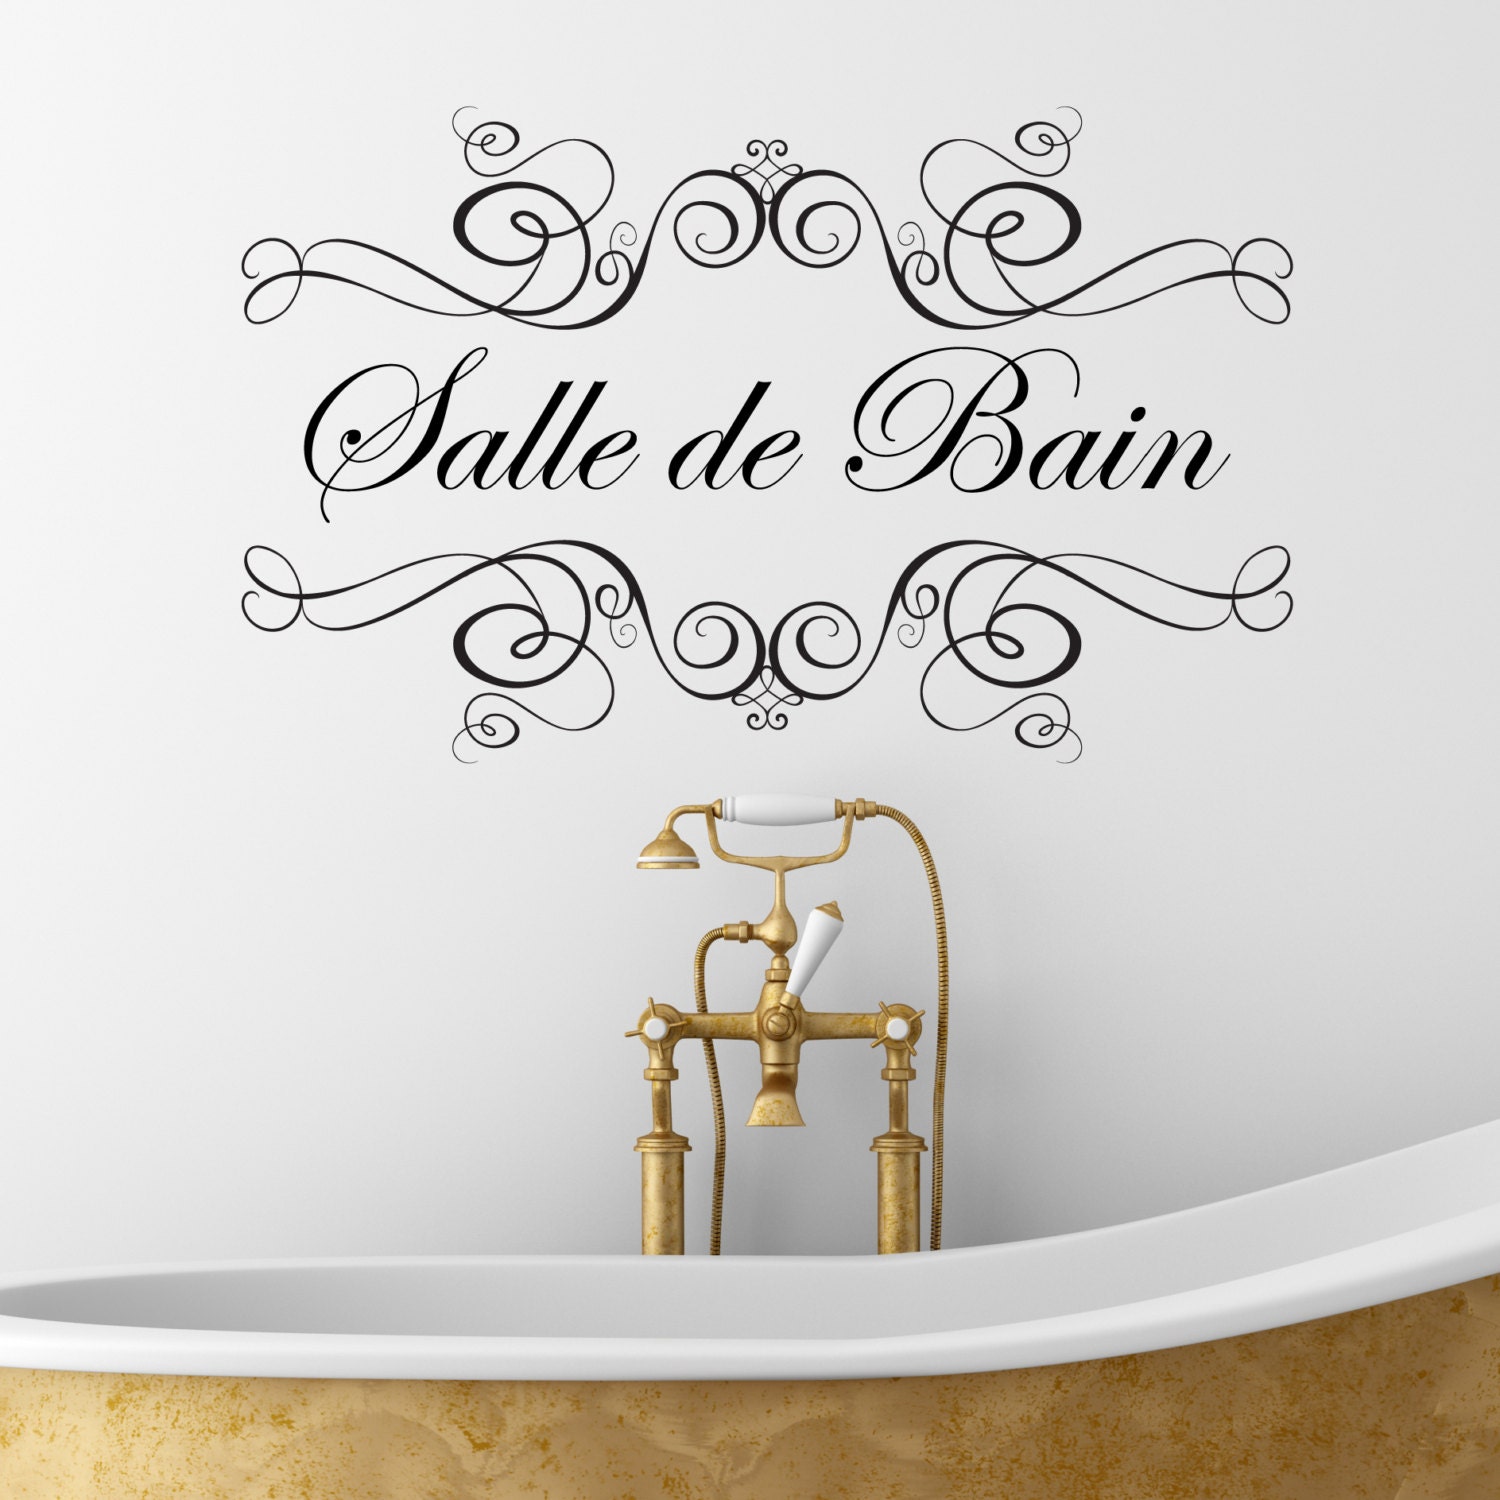 Sticker Mural Salle De Bain Water Room - ZoneStickers